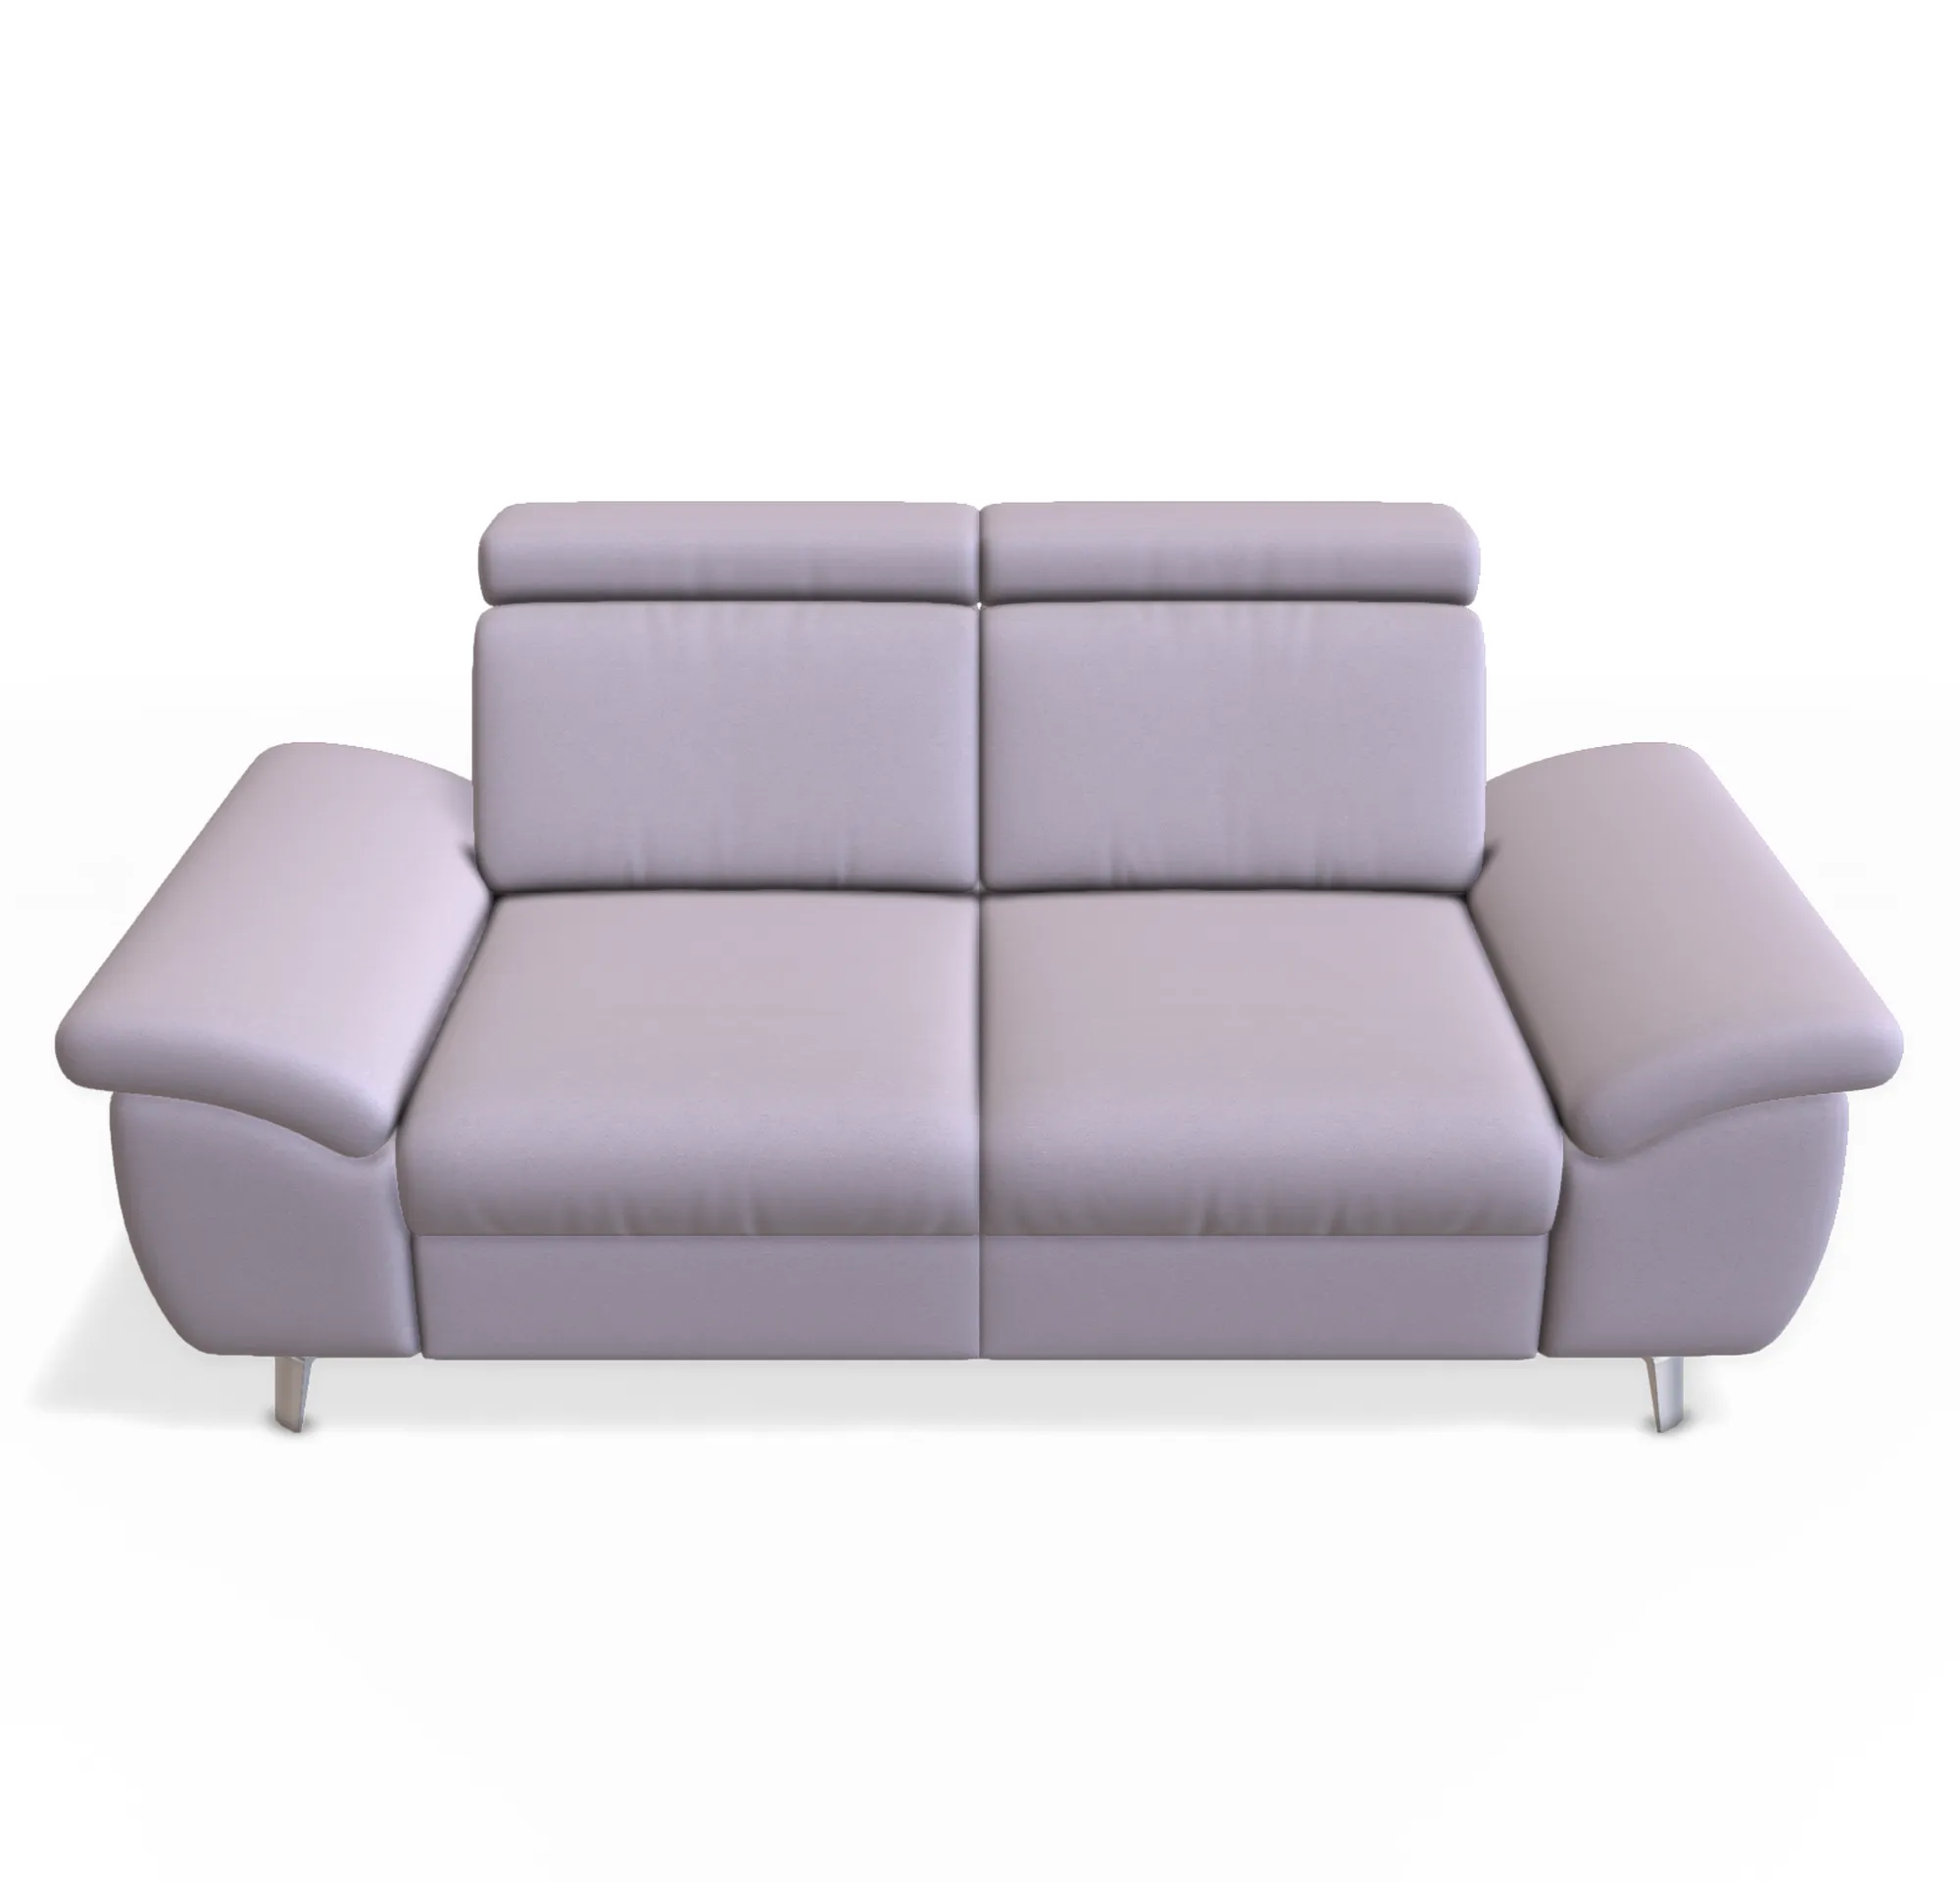 schönes 2 sitzer sofa mit stoffbezug in stein farbton und Metallfuß